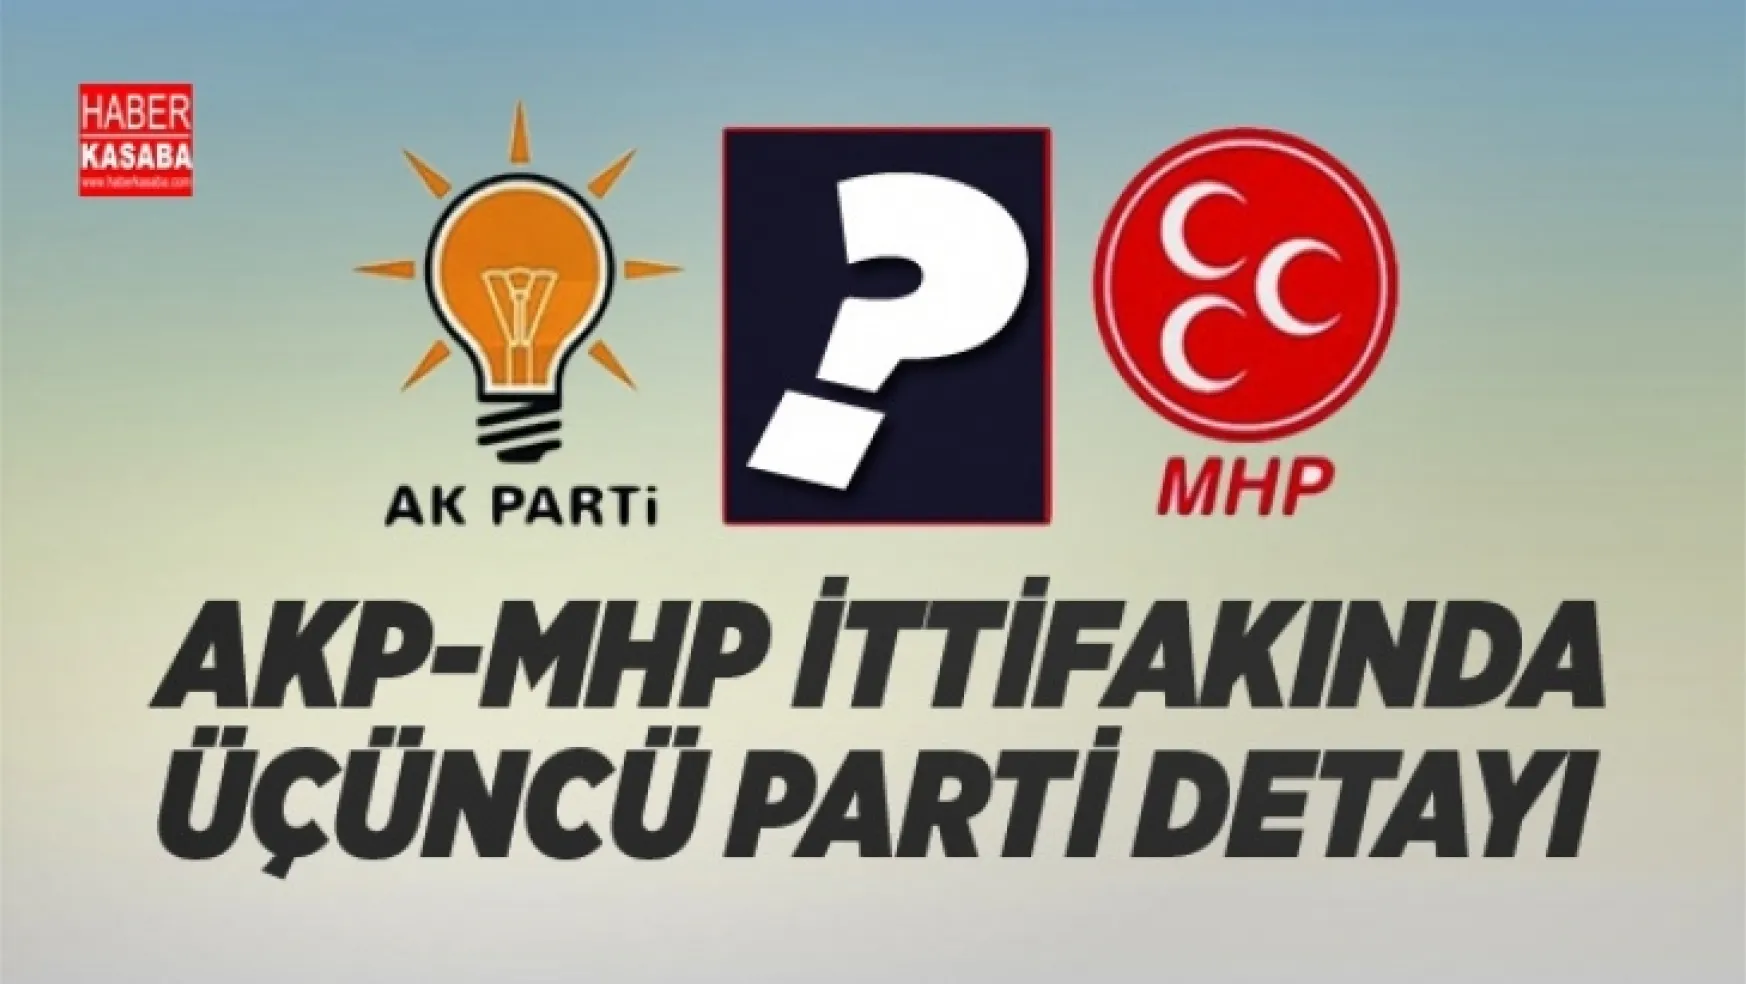 AKP ve MHP ittifakında üçüncü parti detayı